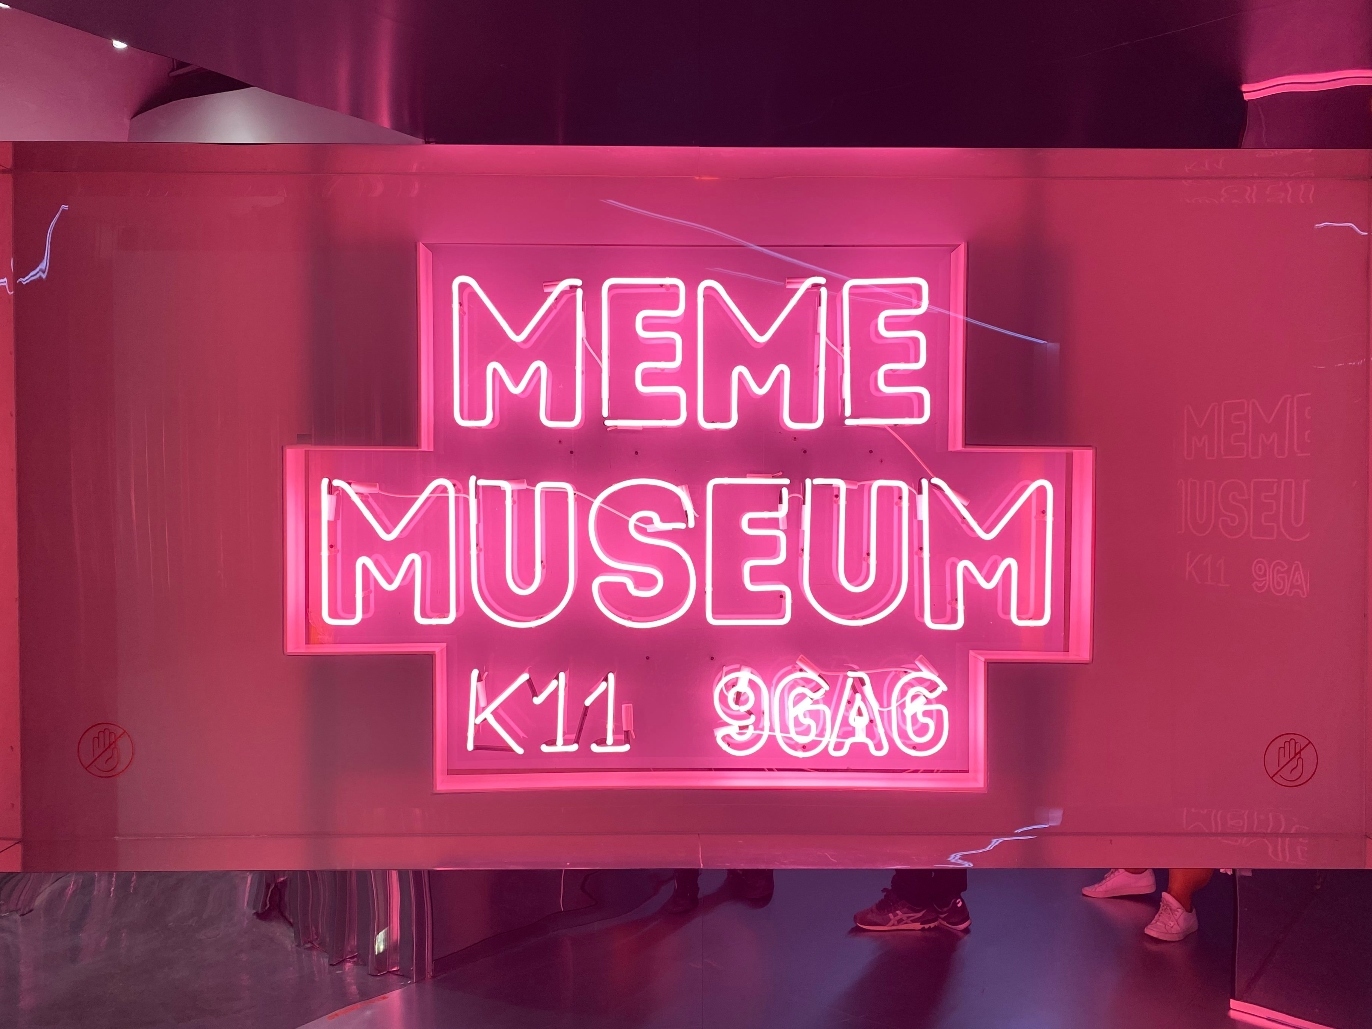 Meme Museum